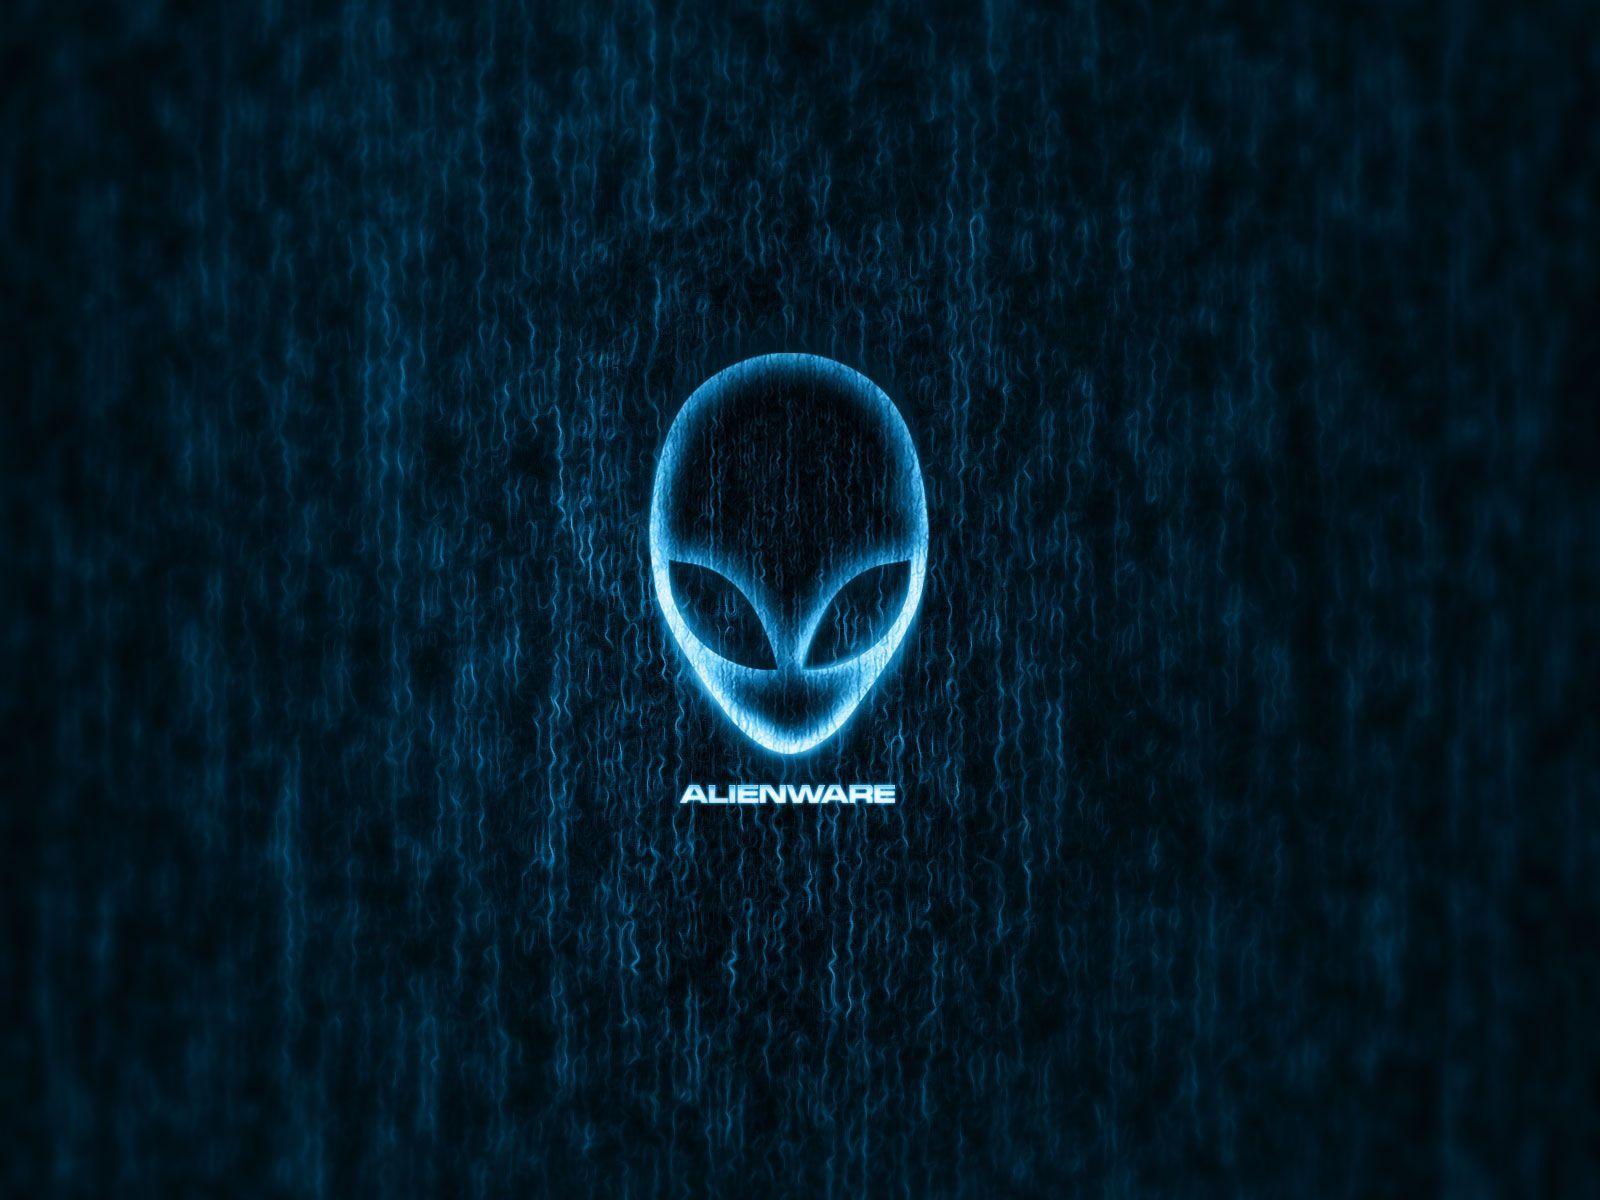 Wallpaper of AlienWare